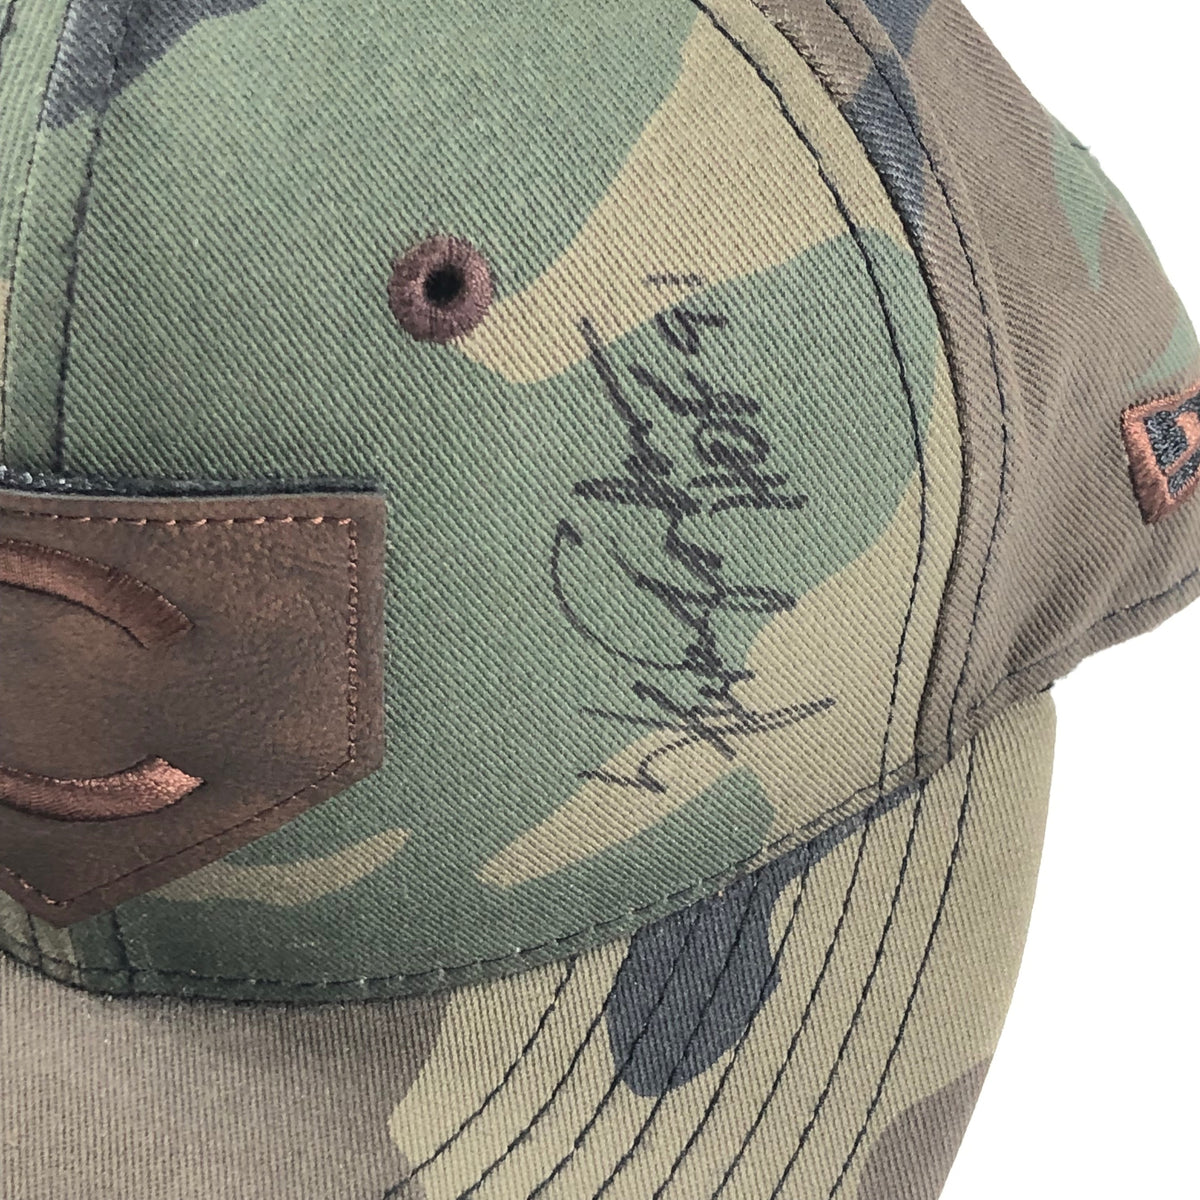 Fergie Jenkins Signed Framed Jersey PSA/DNA Autographed Chicago Cubs